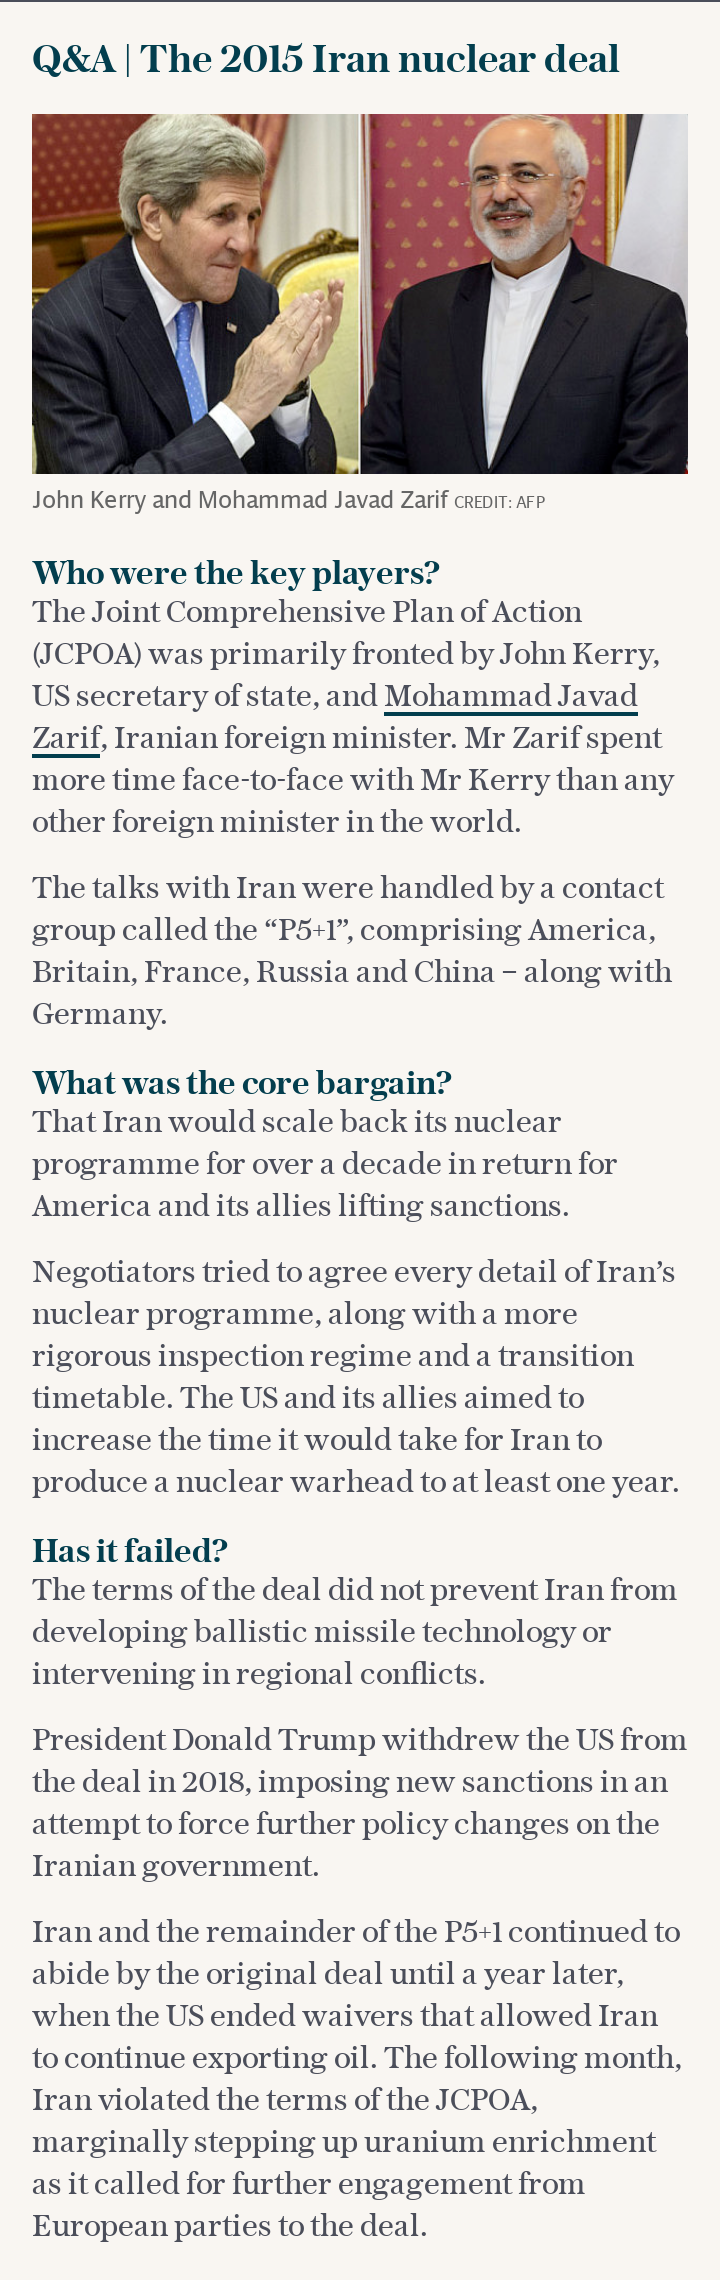 Q&A | The 2015 Iran nuclear deal